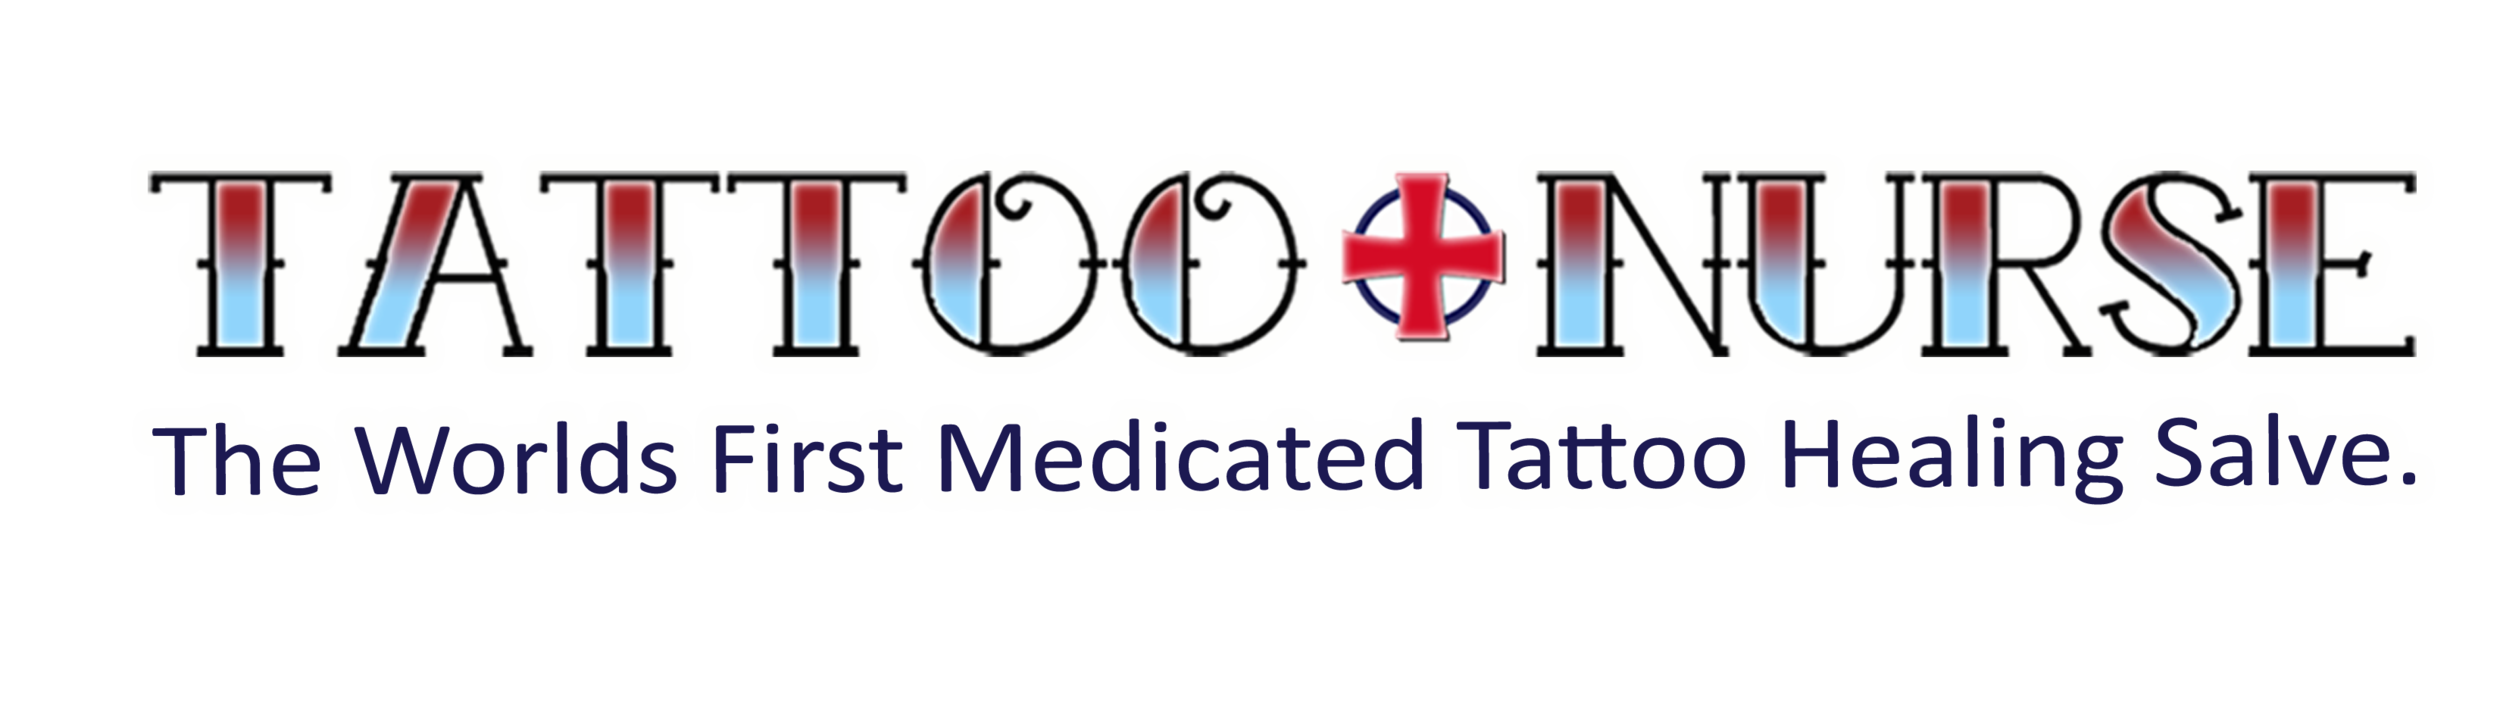 Tattoo Nurse